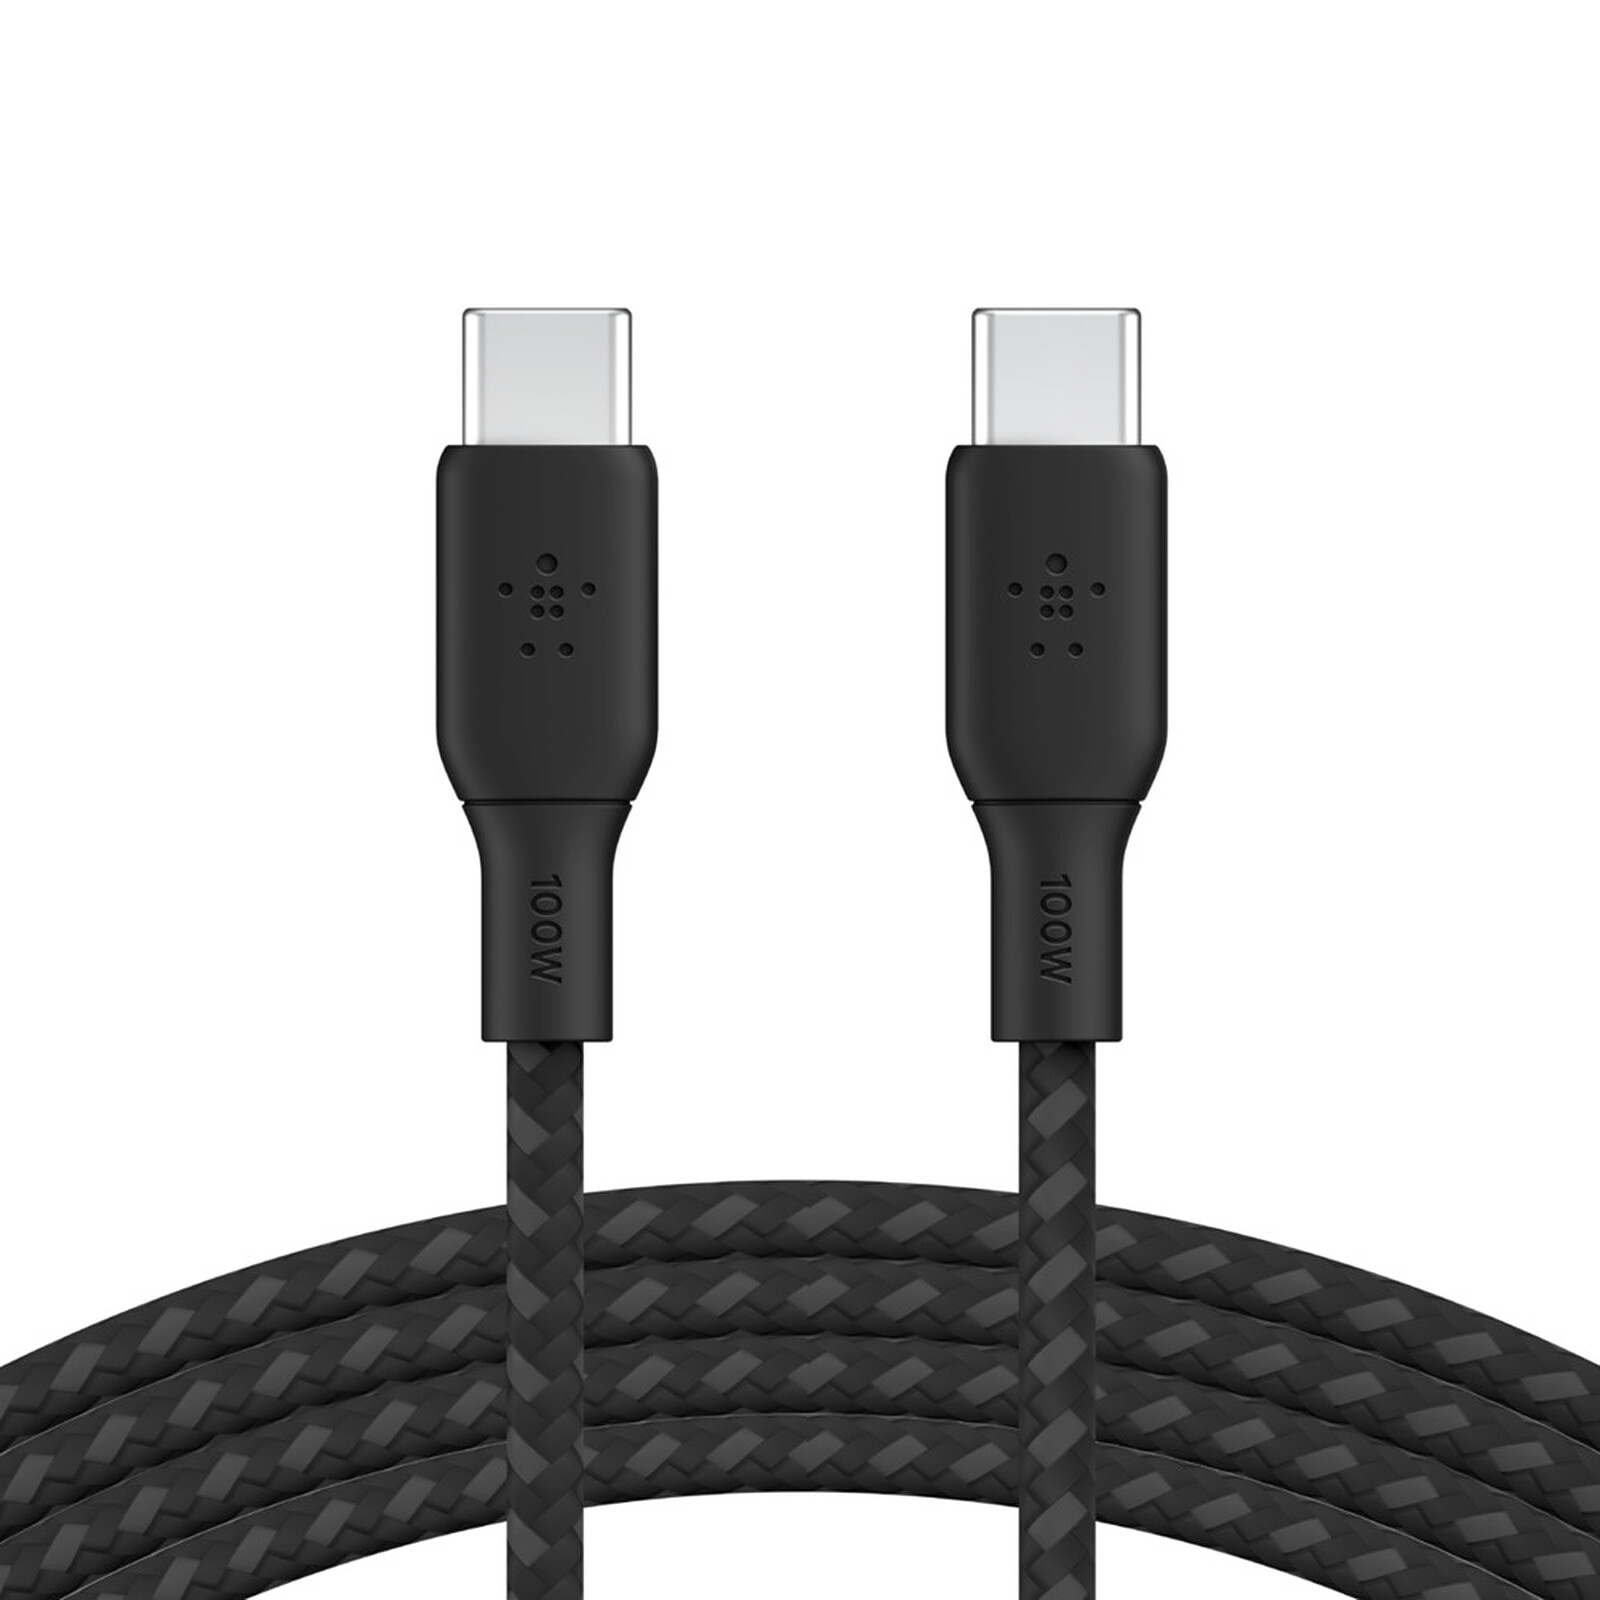 Cable USB A/MicroB, de puissance, 2m